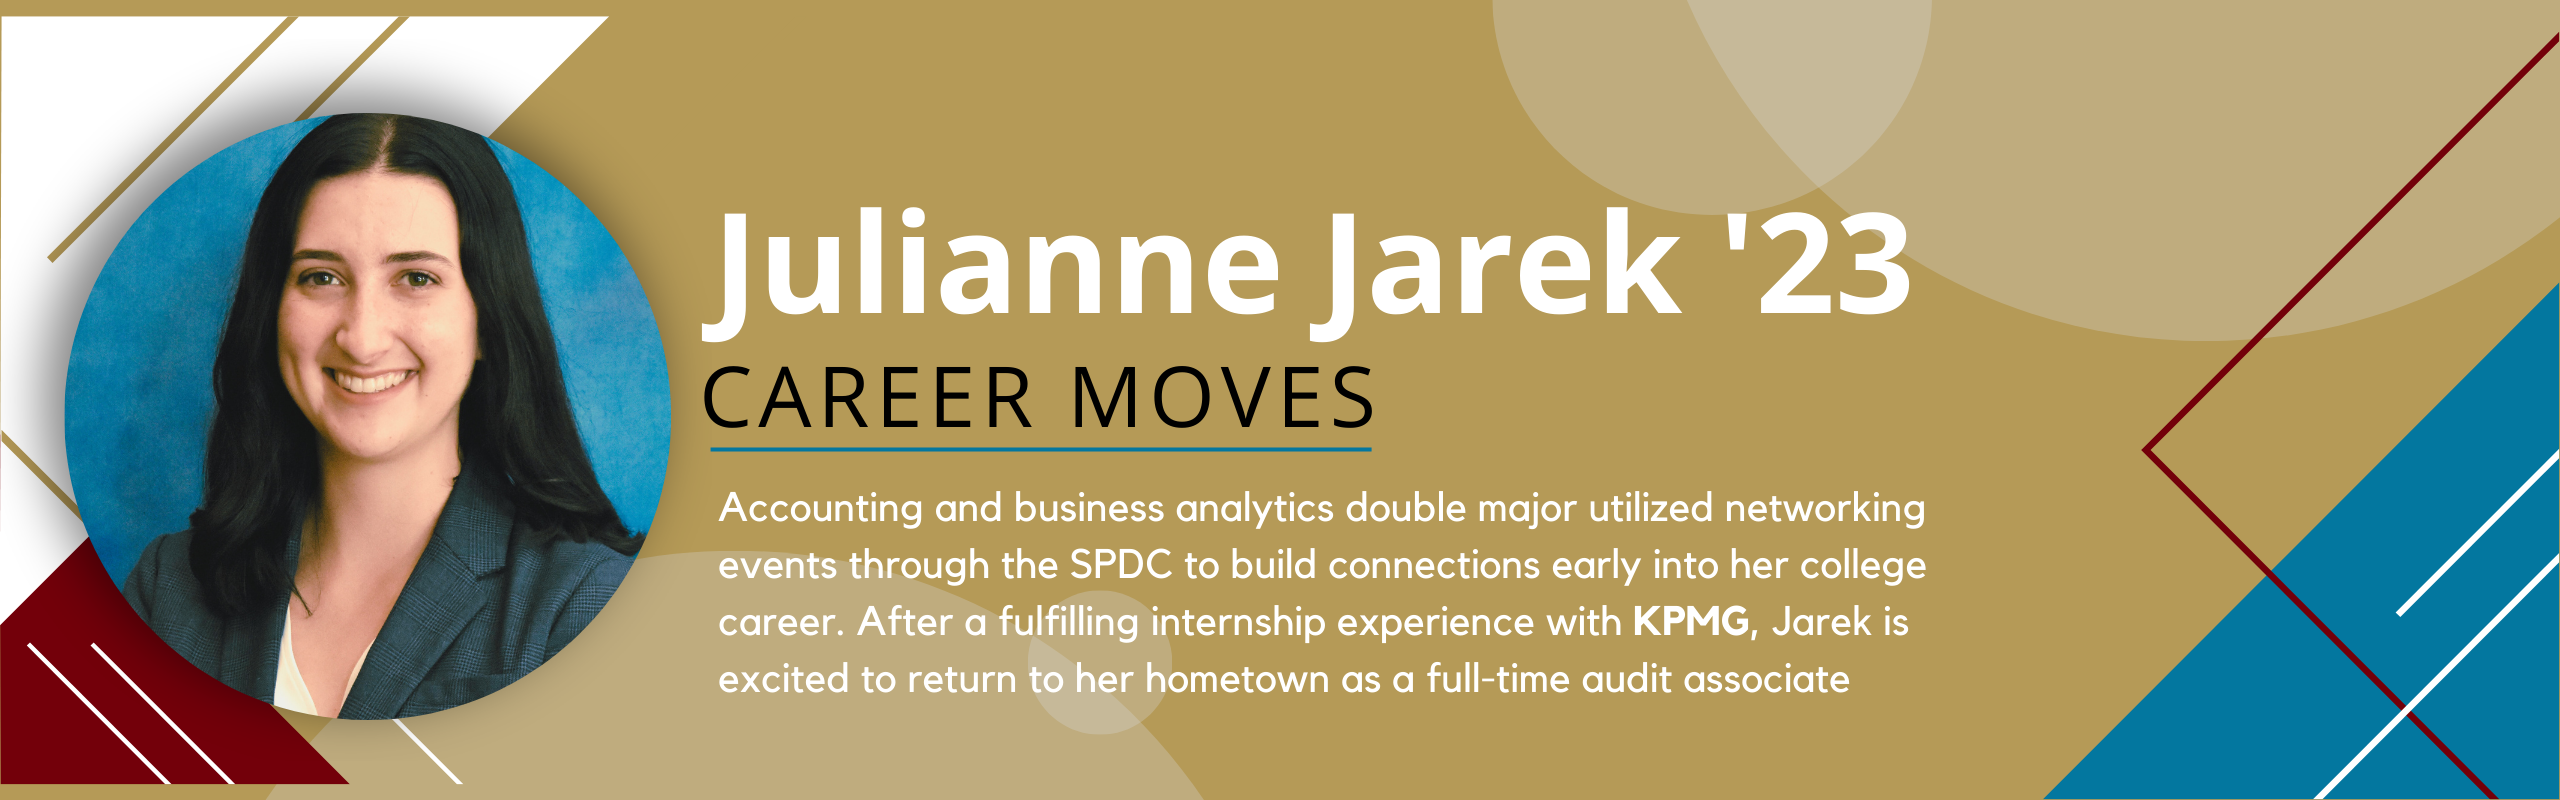 Career Moves Julianne Jarek